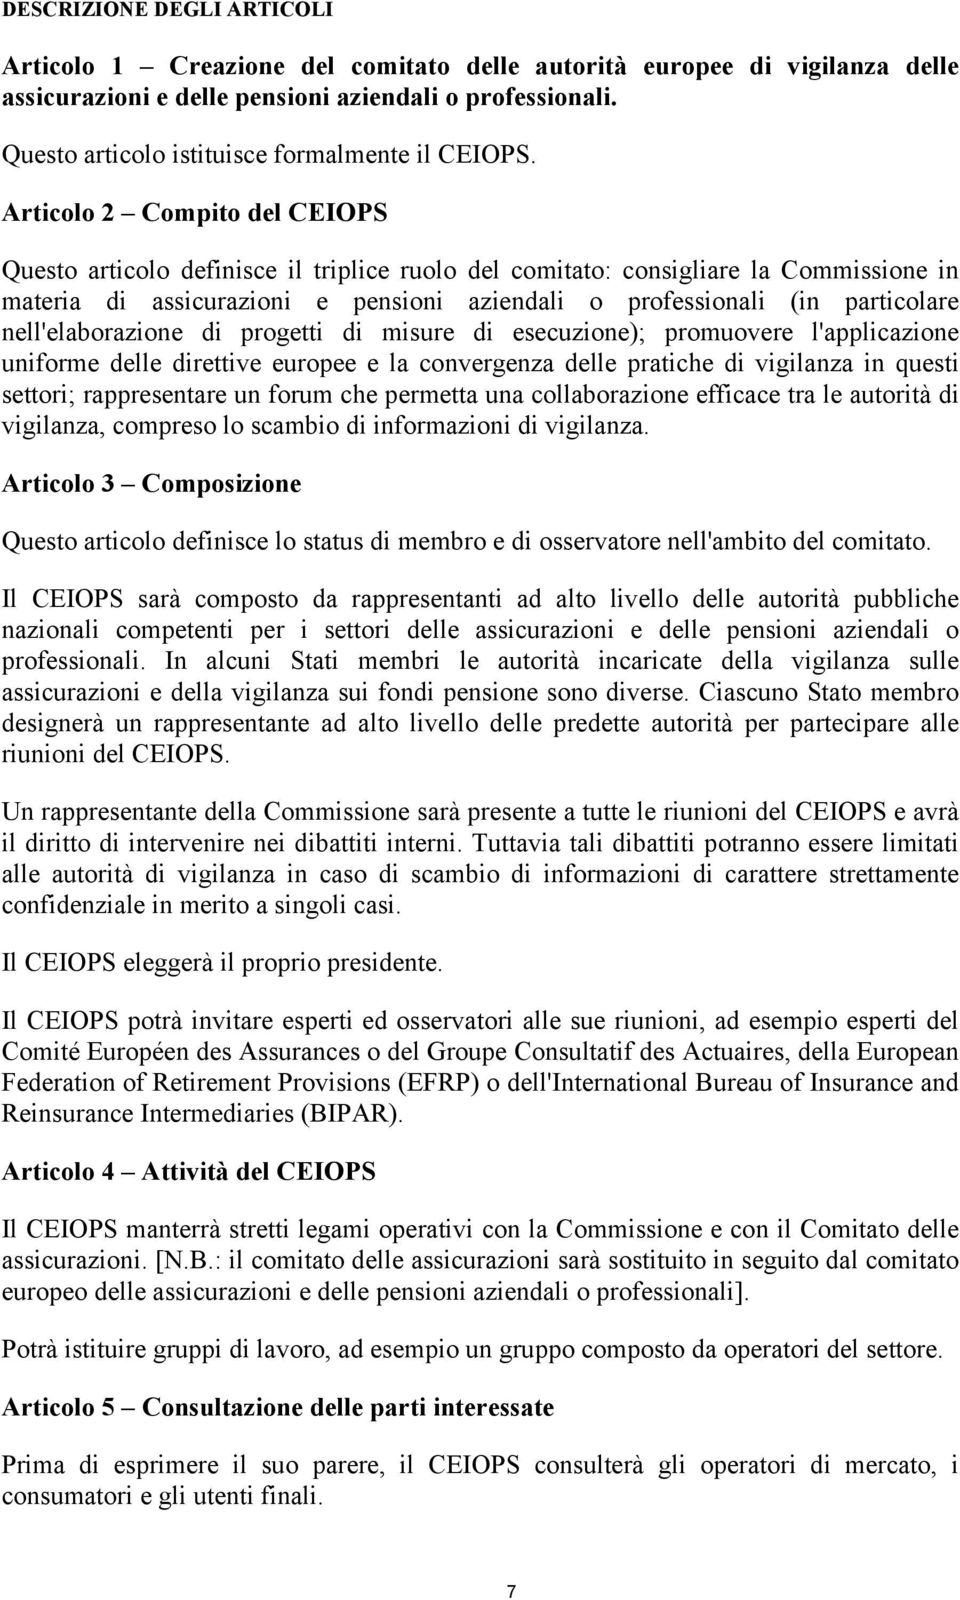 Articolo 2 Compito del CEIOPS Questo articolo definisce il triplice ruolo del comitato: consigliare la Commissione in materia di assicurazioni e pensioni aziendali o professionali (in particolare